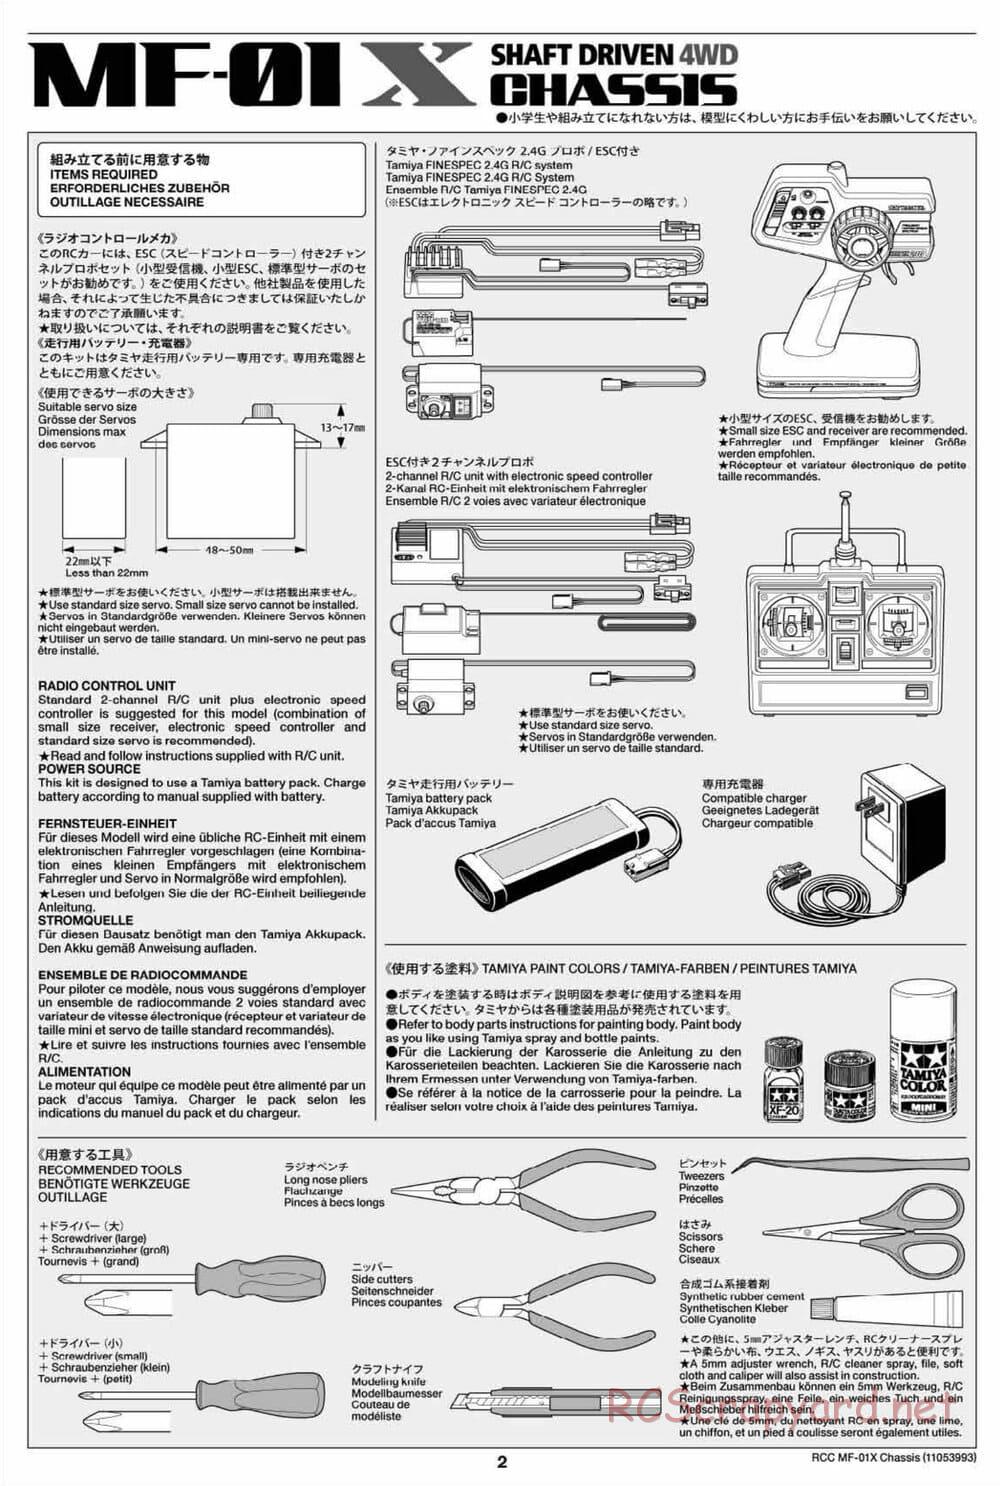 Tamiya - MF-01X Chassis - Manual - Page 2